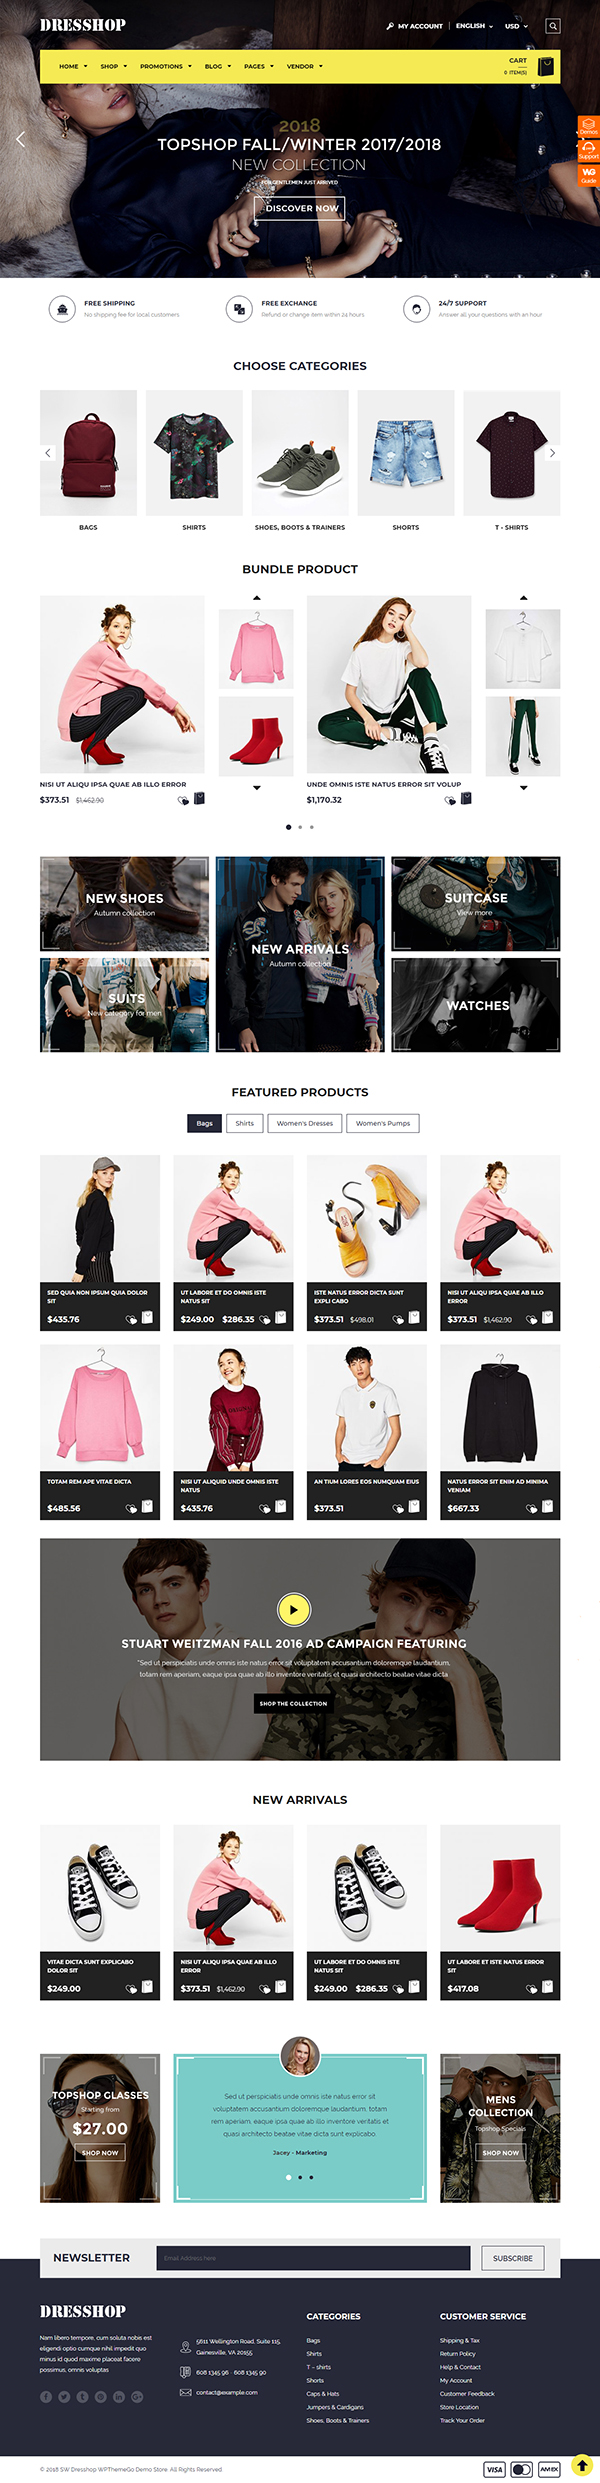 DresShop - Fashion WooCommerce Theme